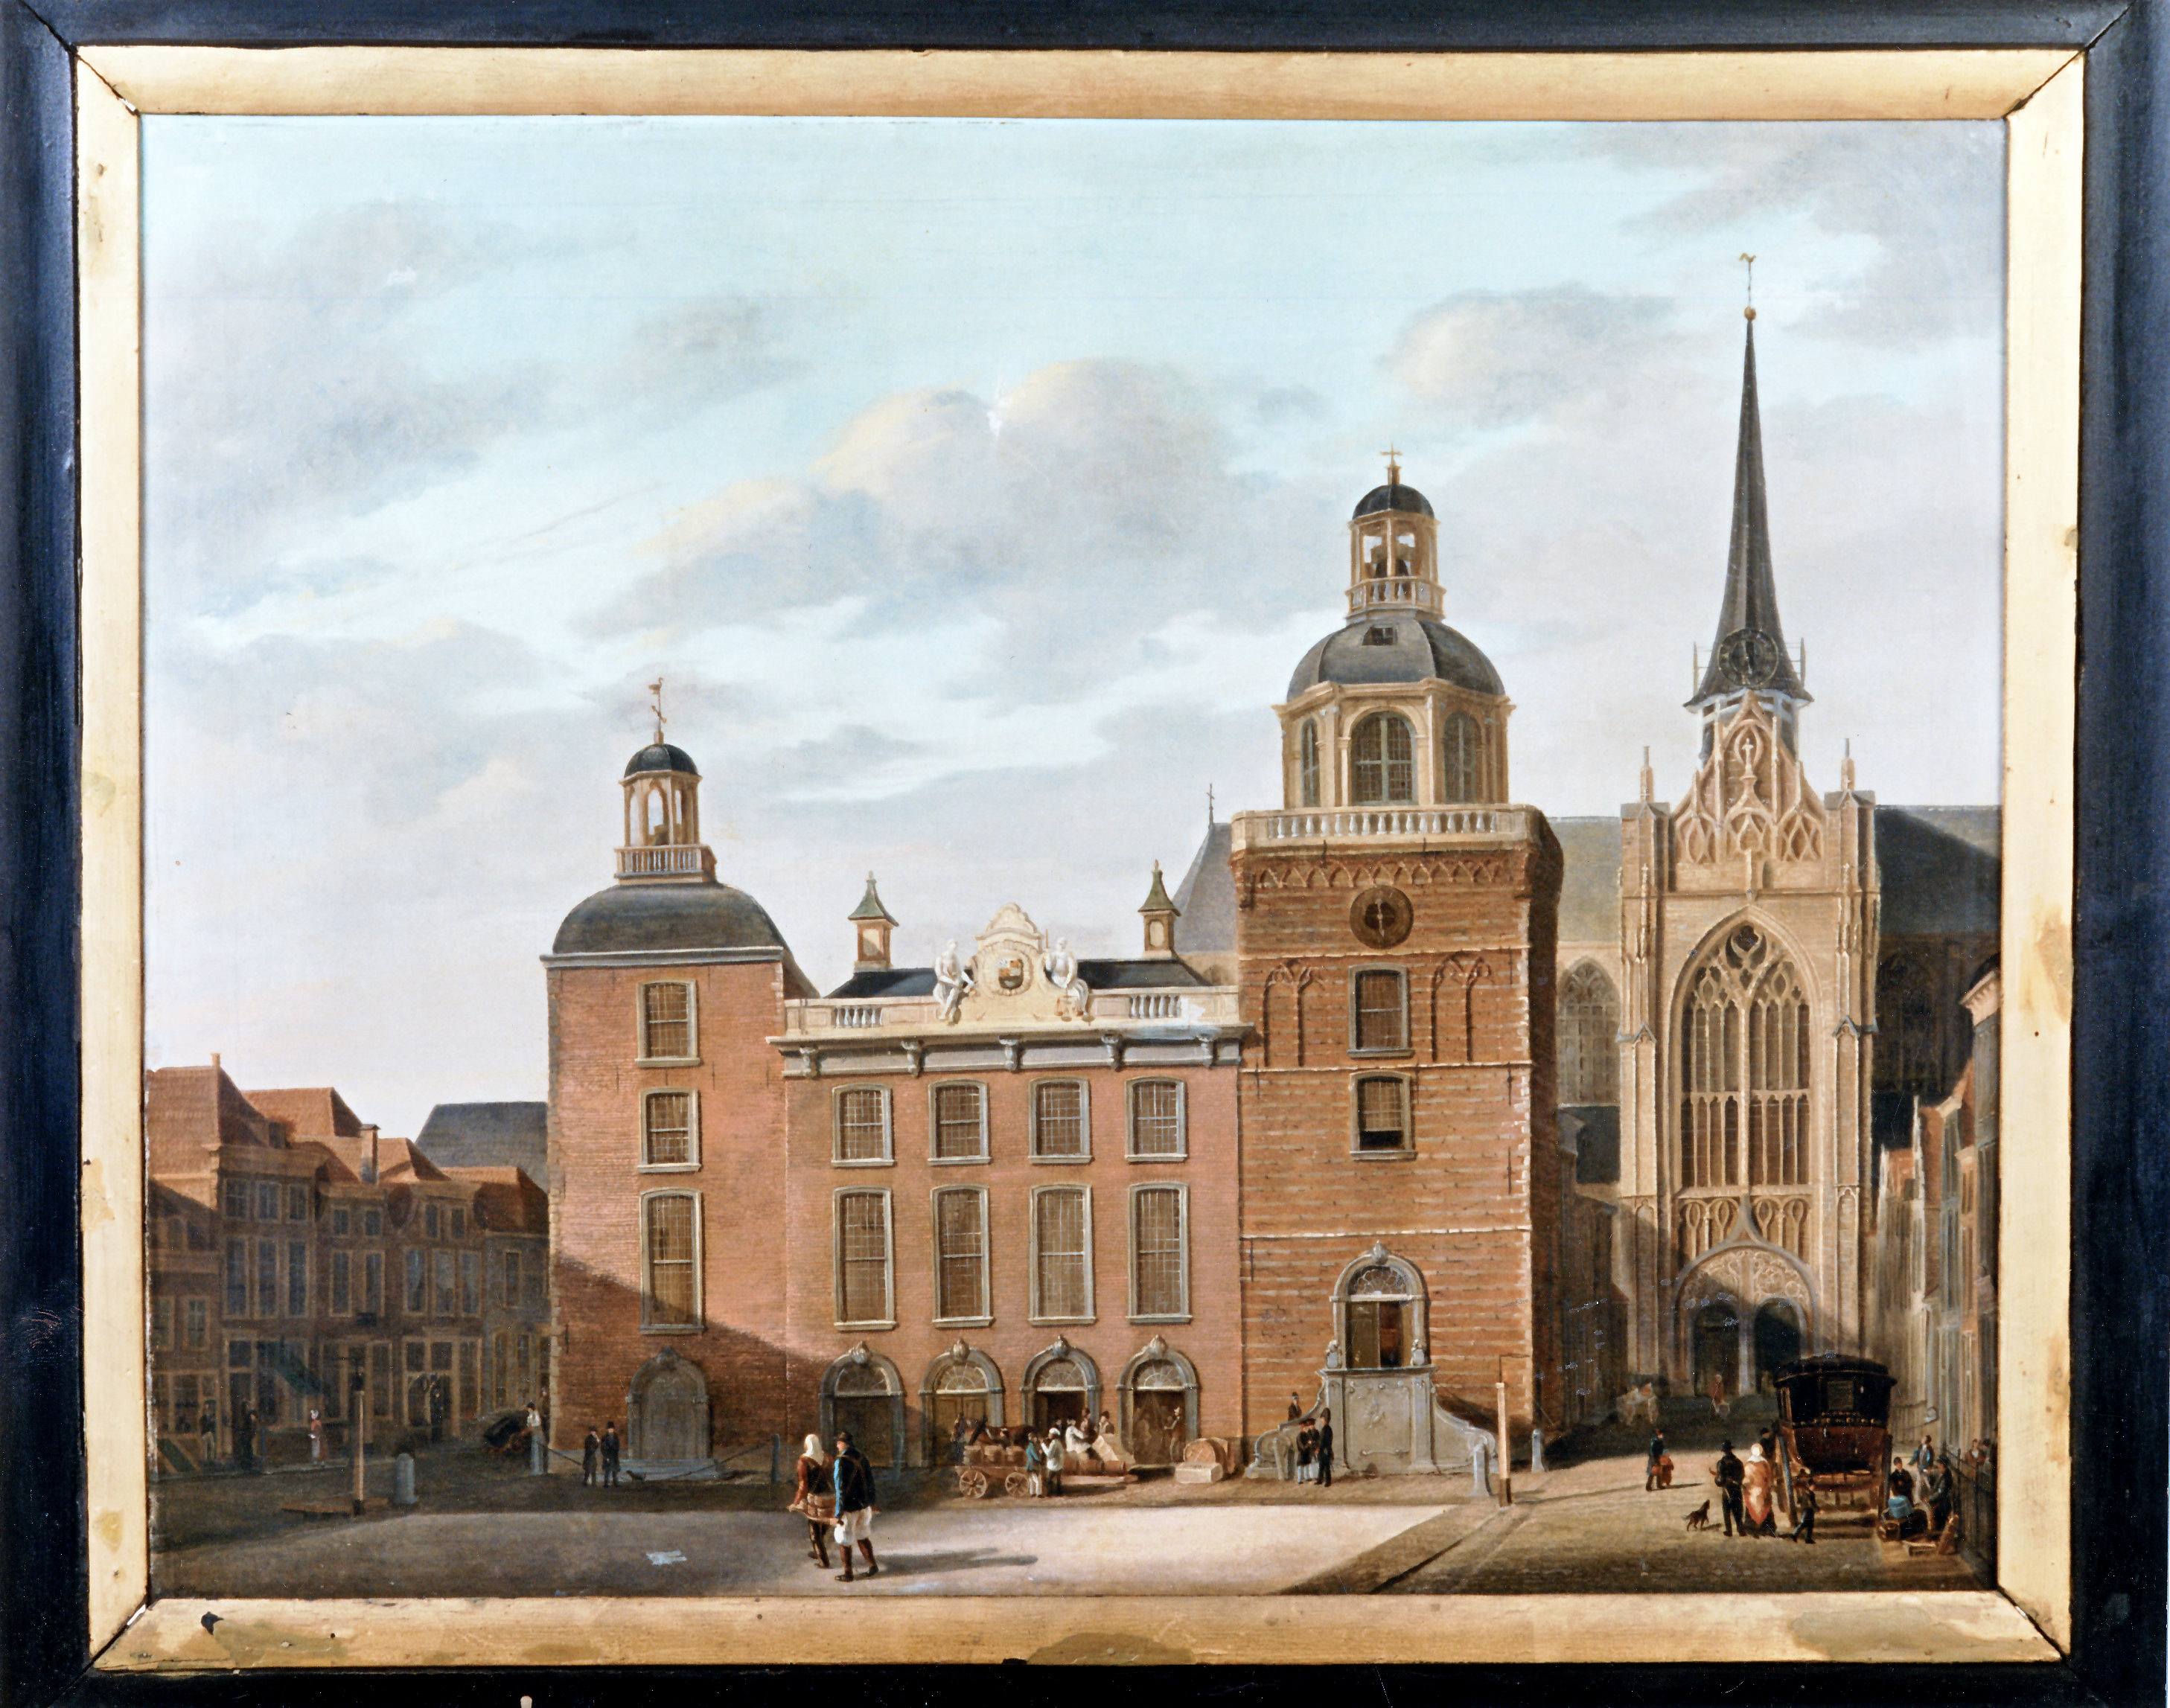 Het stadhuis aan de Grote Markt, ca. 1840.